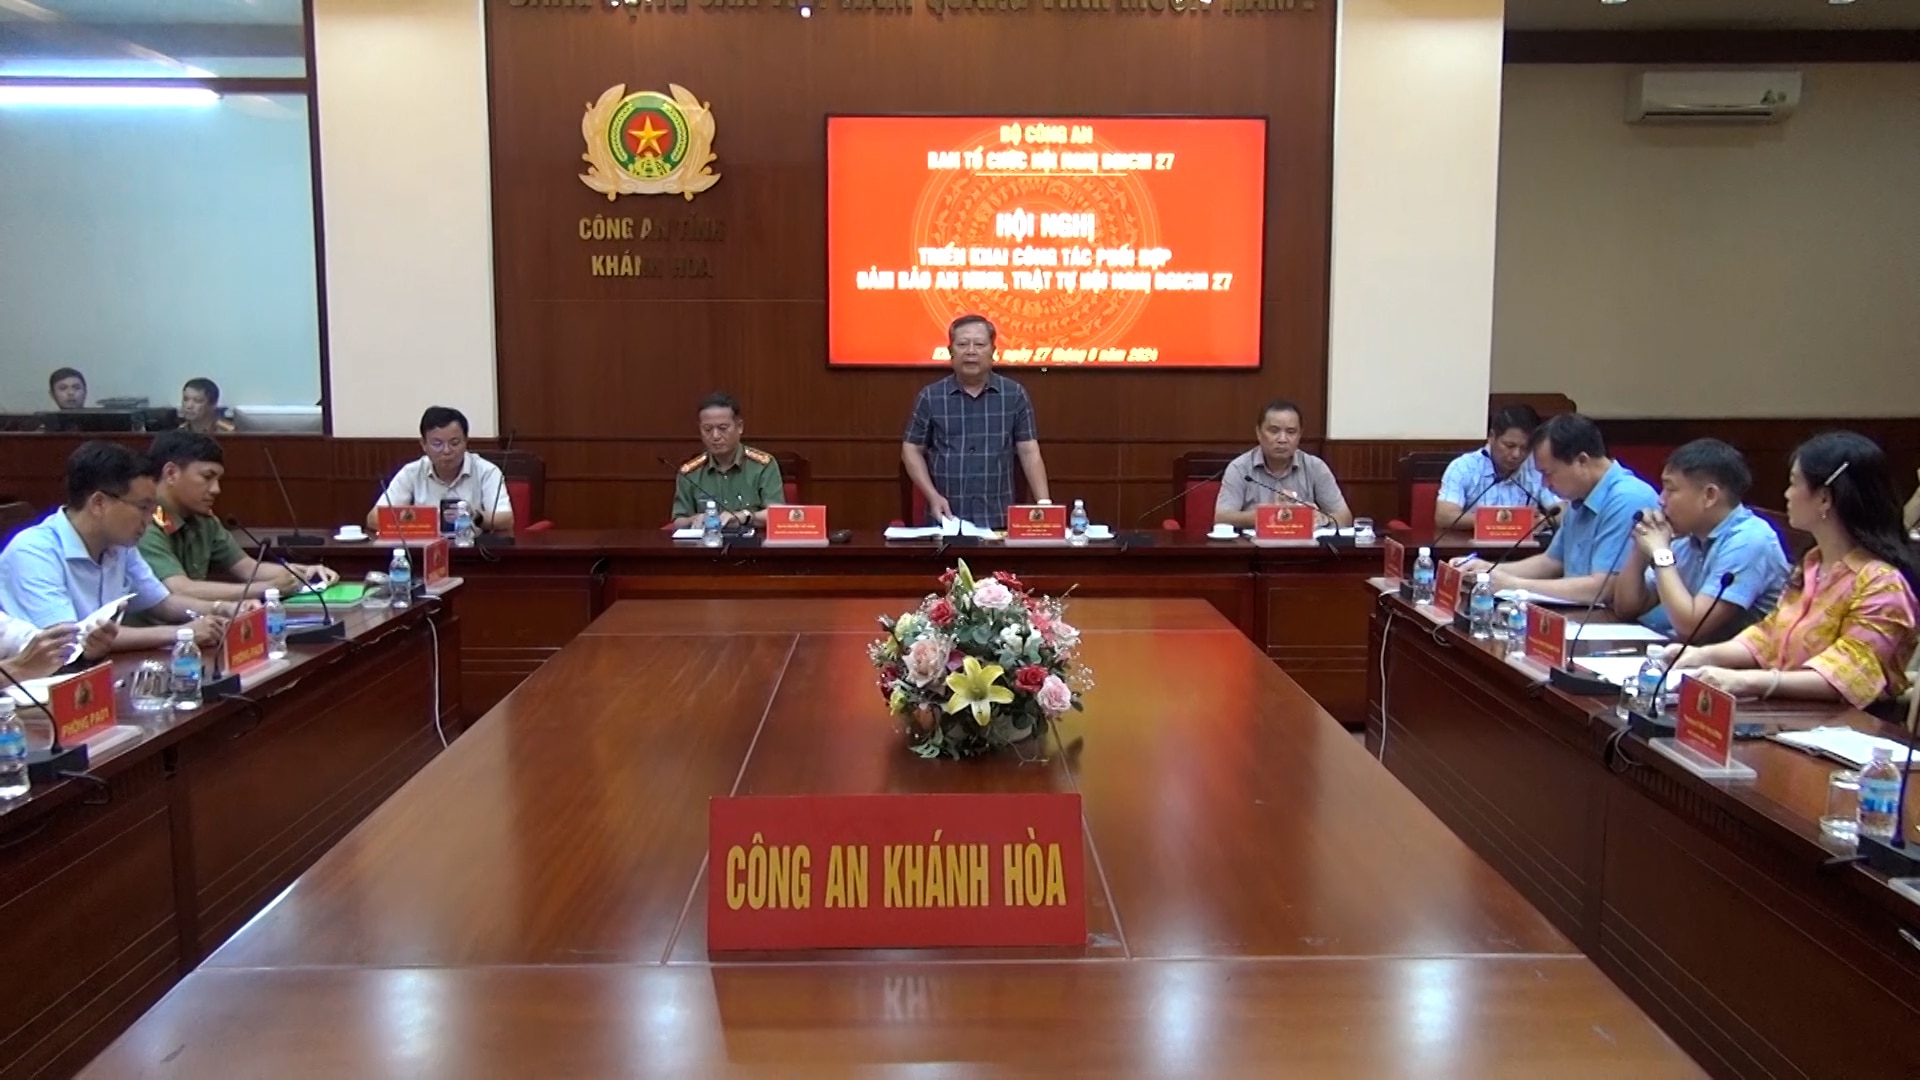 Quang cảnh buổi làm việc giữa Đoàn khảo sát và Công an tỉnh Khánh Hòa.